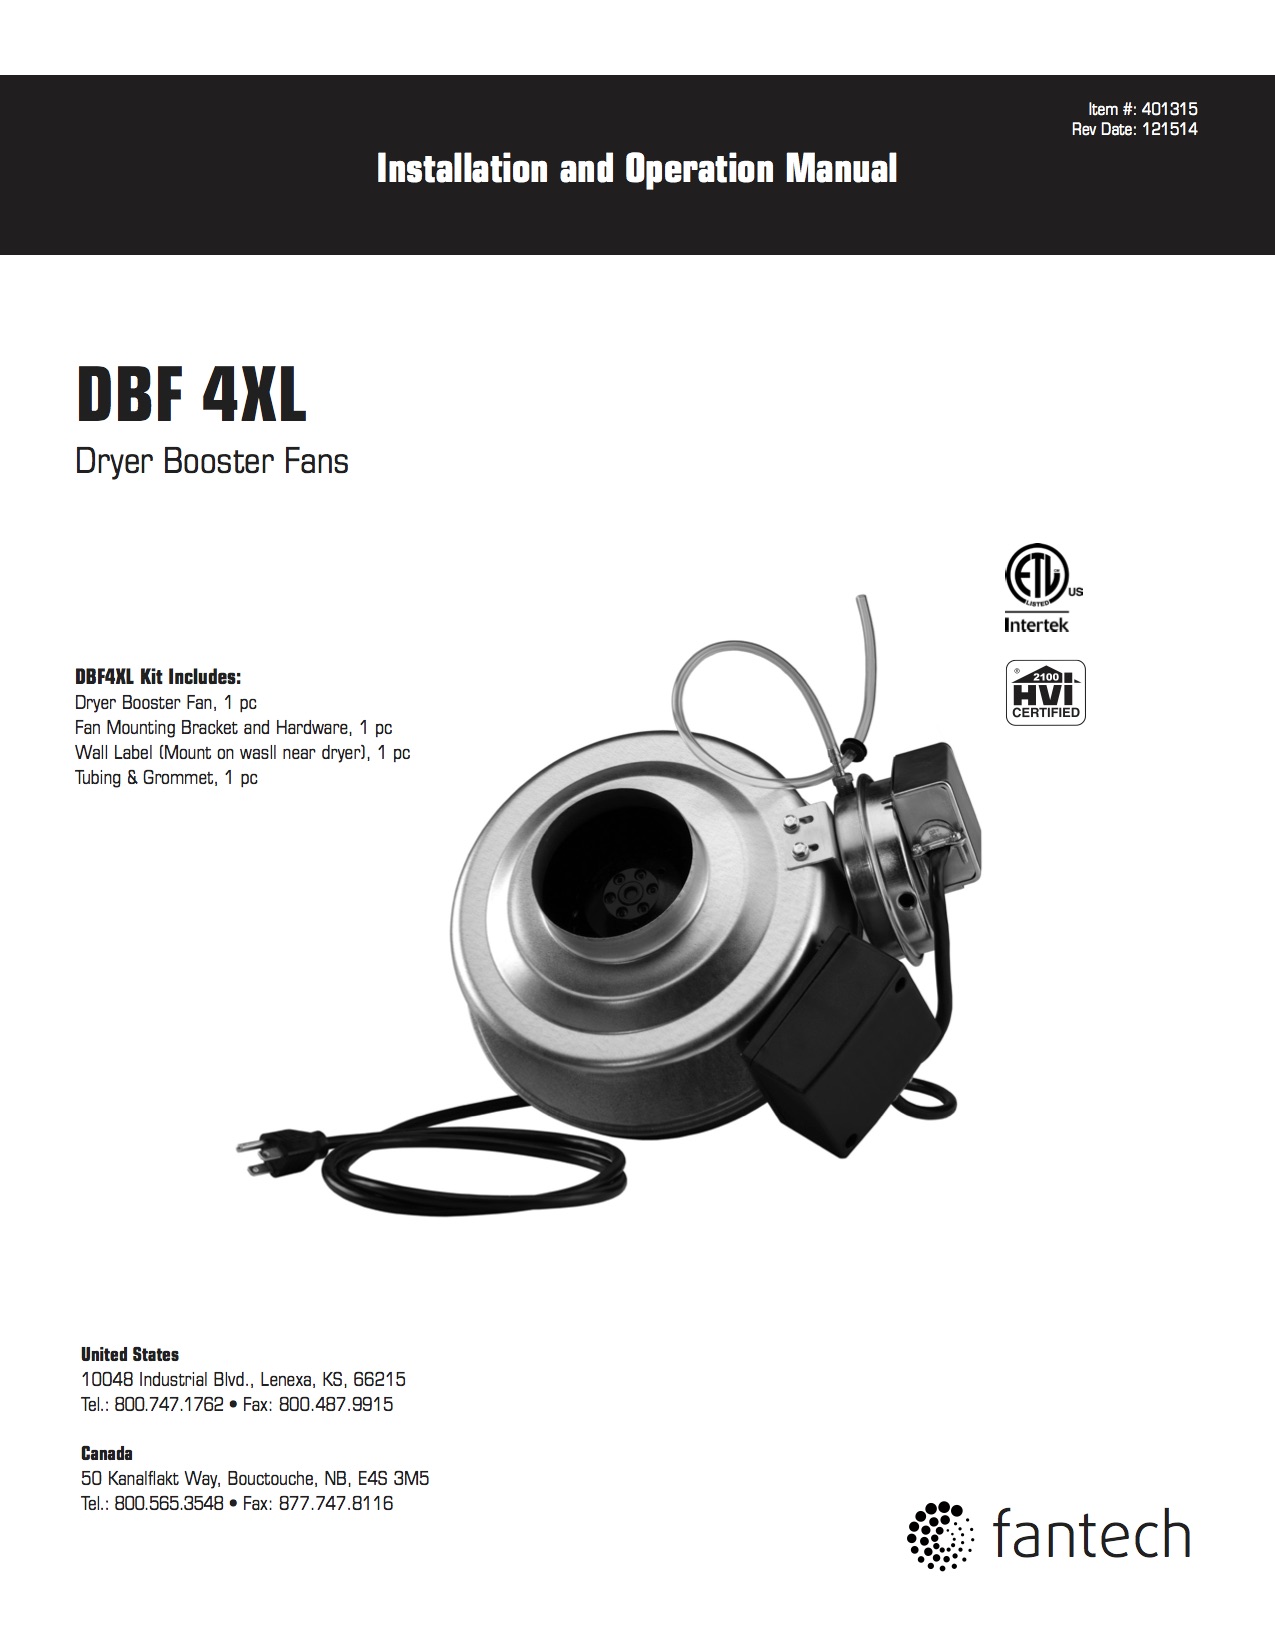 Fantech DBF 4XL Dryer Booster Fan